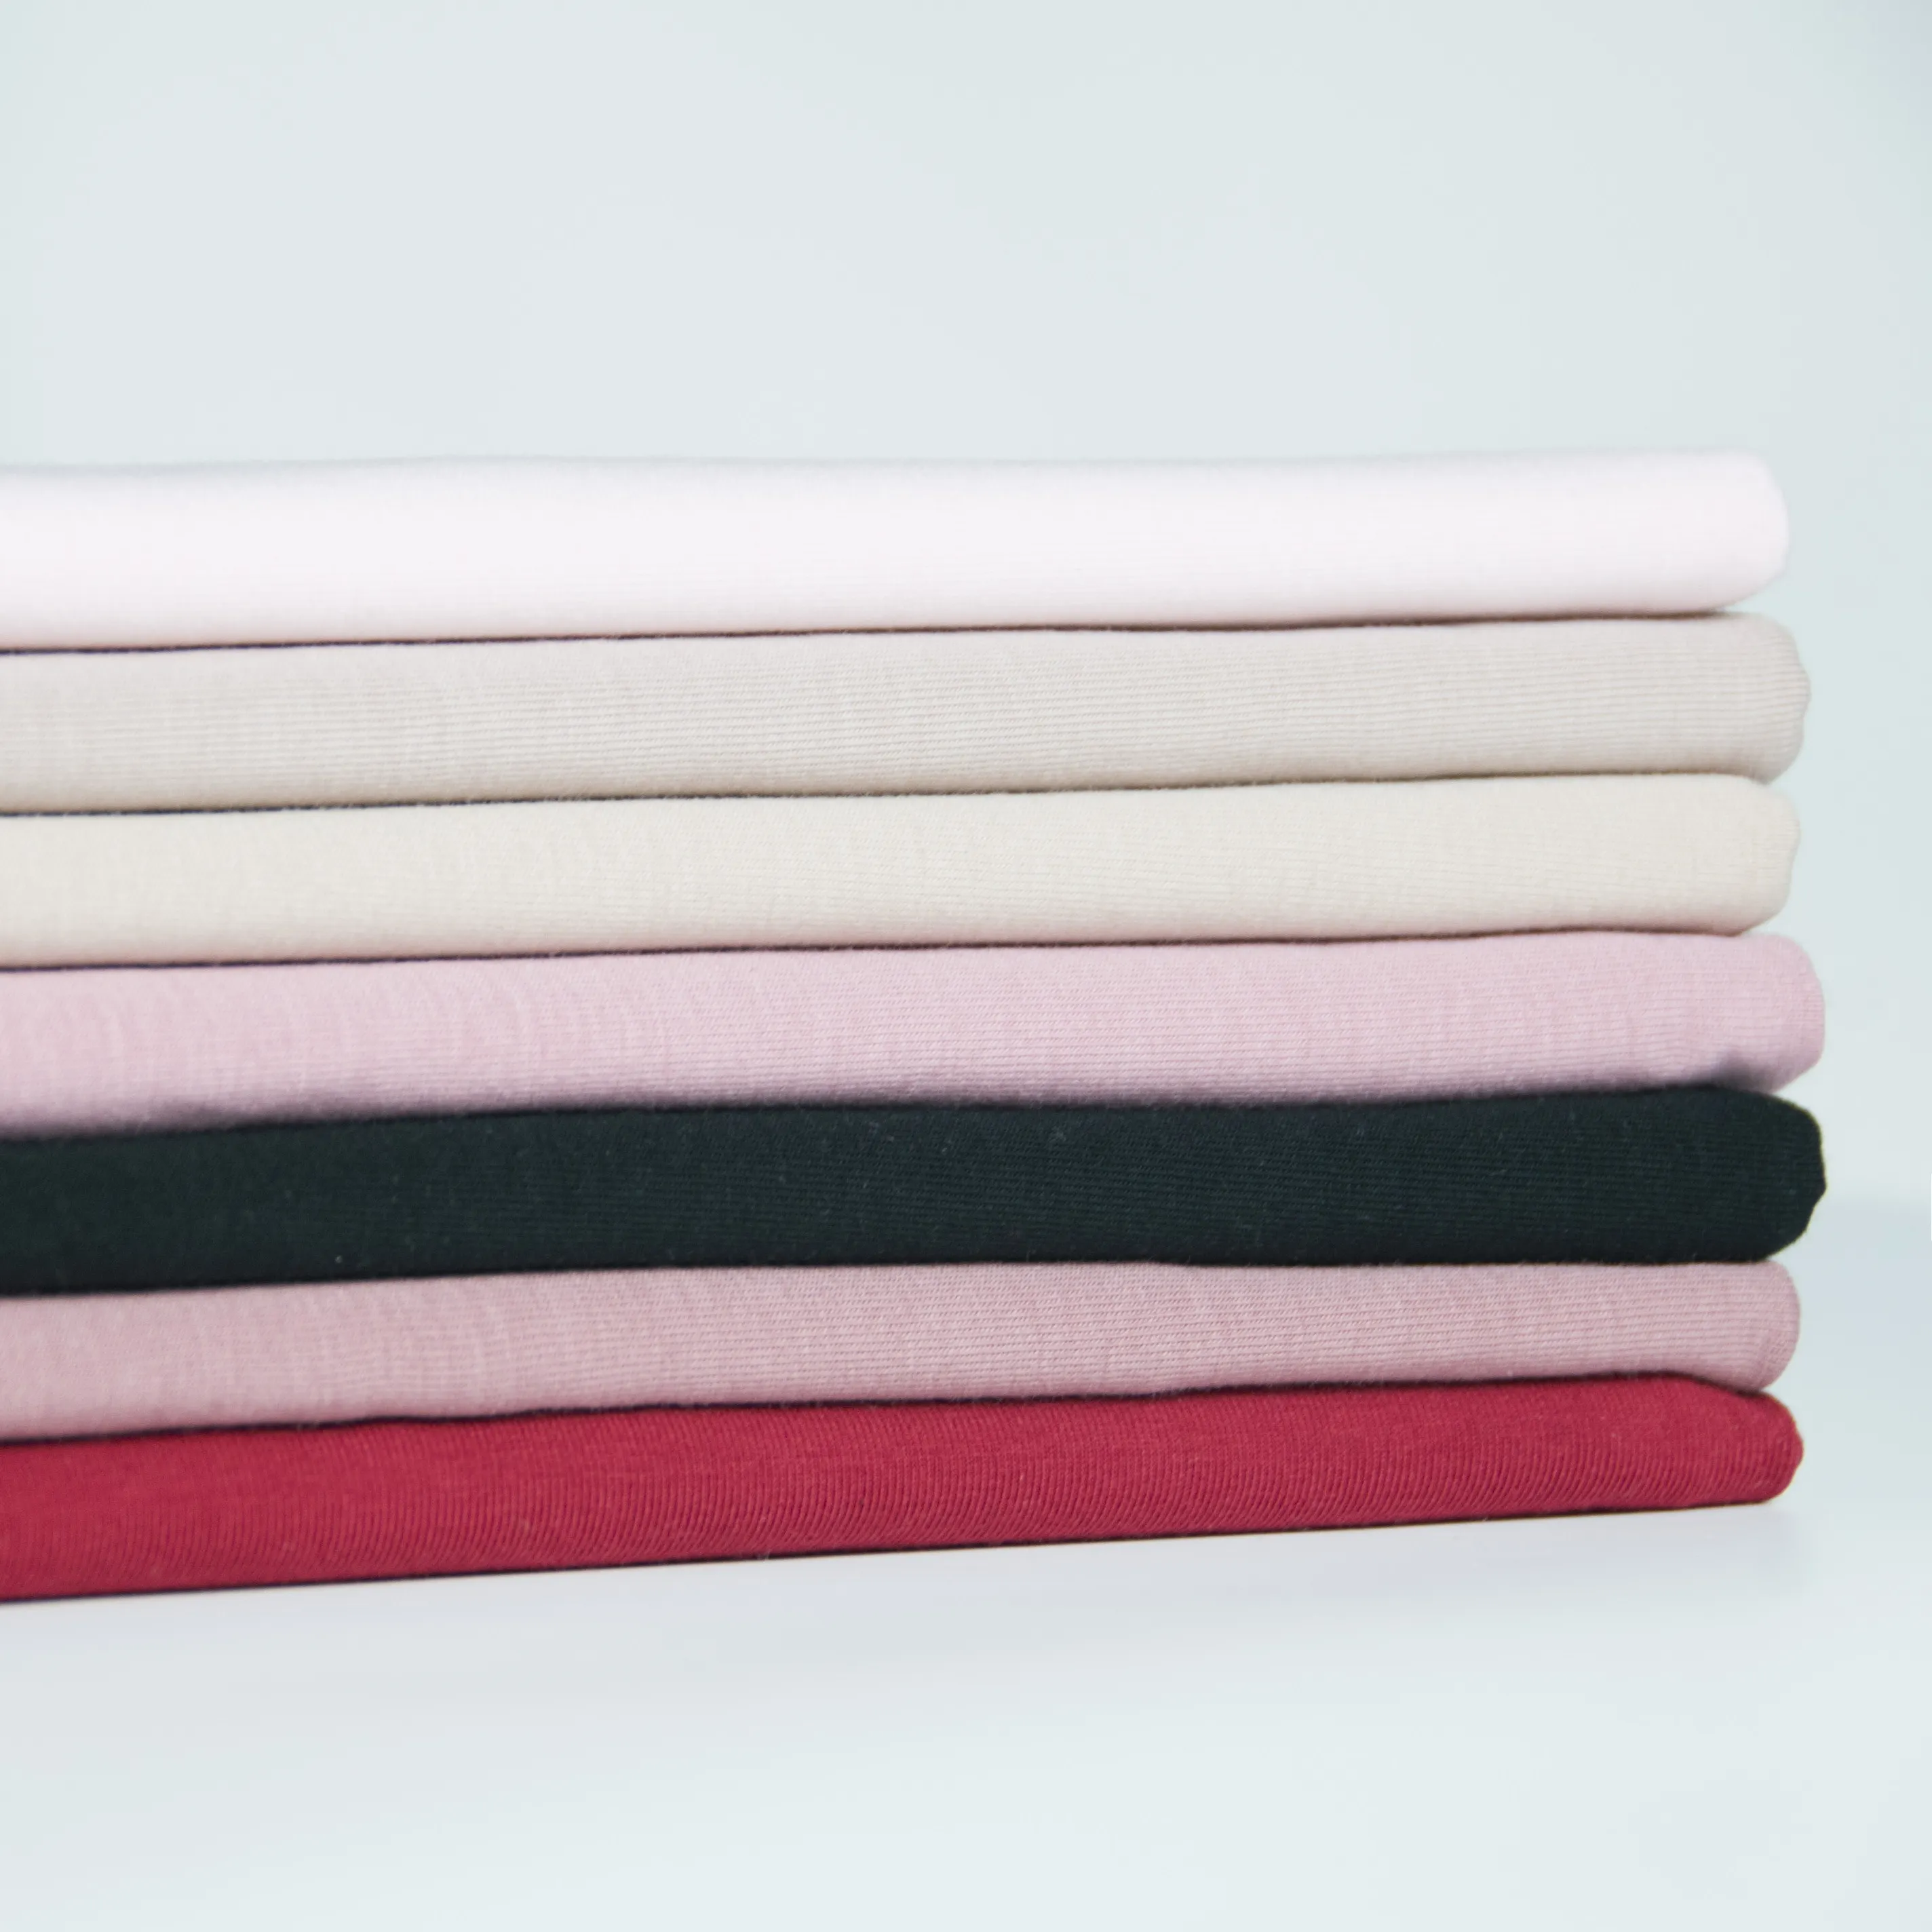 Bán Sỉ Vải Jersey Cotton Đơn Co Giãn Chất Lượng Cao 100% Cotton Spandex Cho Áo Phông